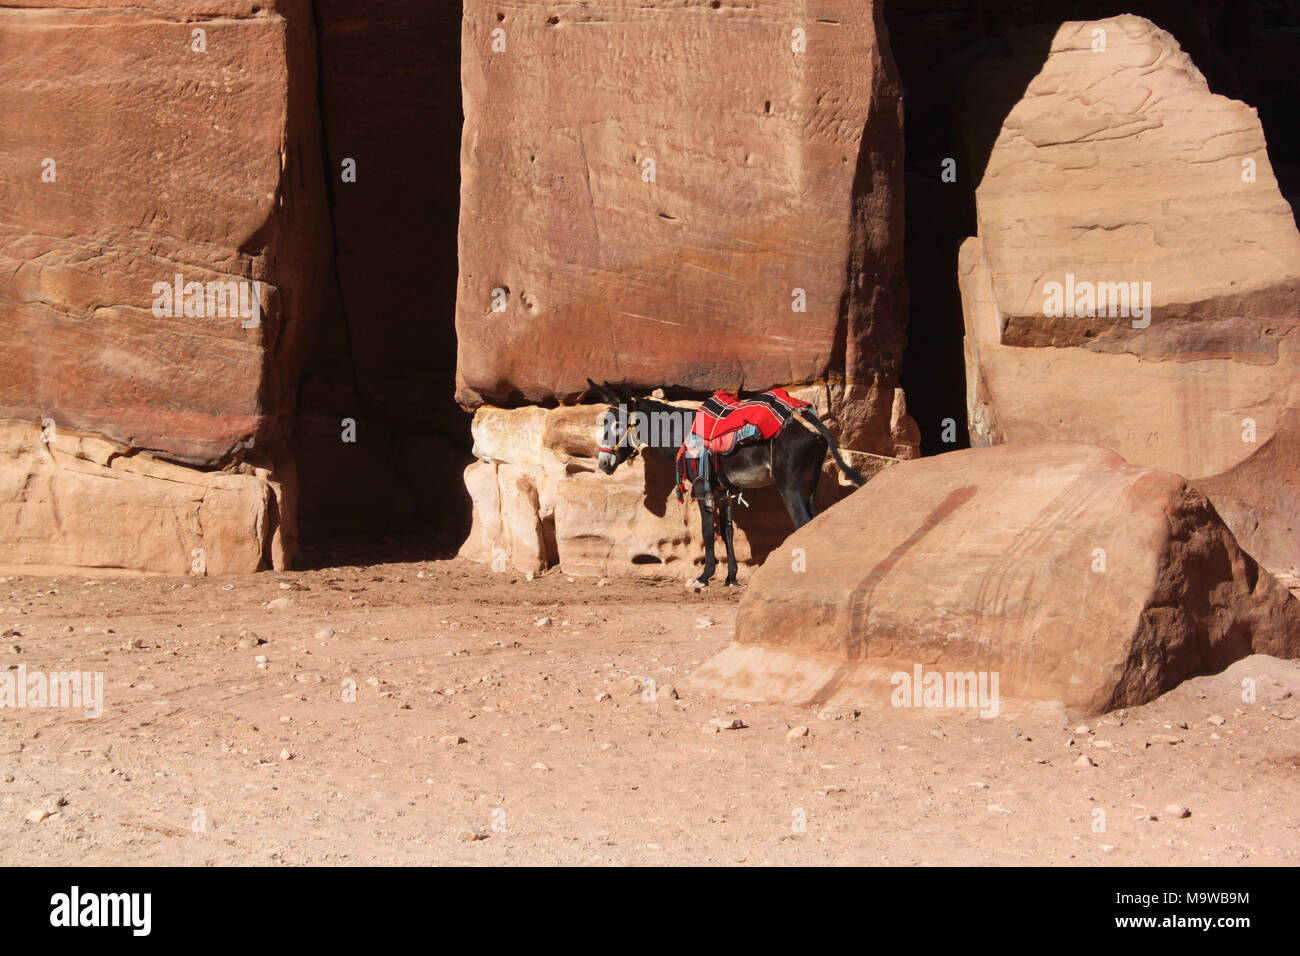 Un burro descansando en una tumba monumental. Las guías de los beduinos locales utilizan burros para el transporte de turistas alrededor del sitio de Petra. Foto de stock